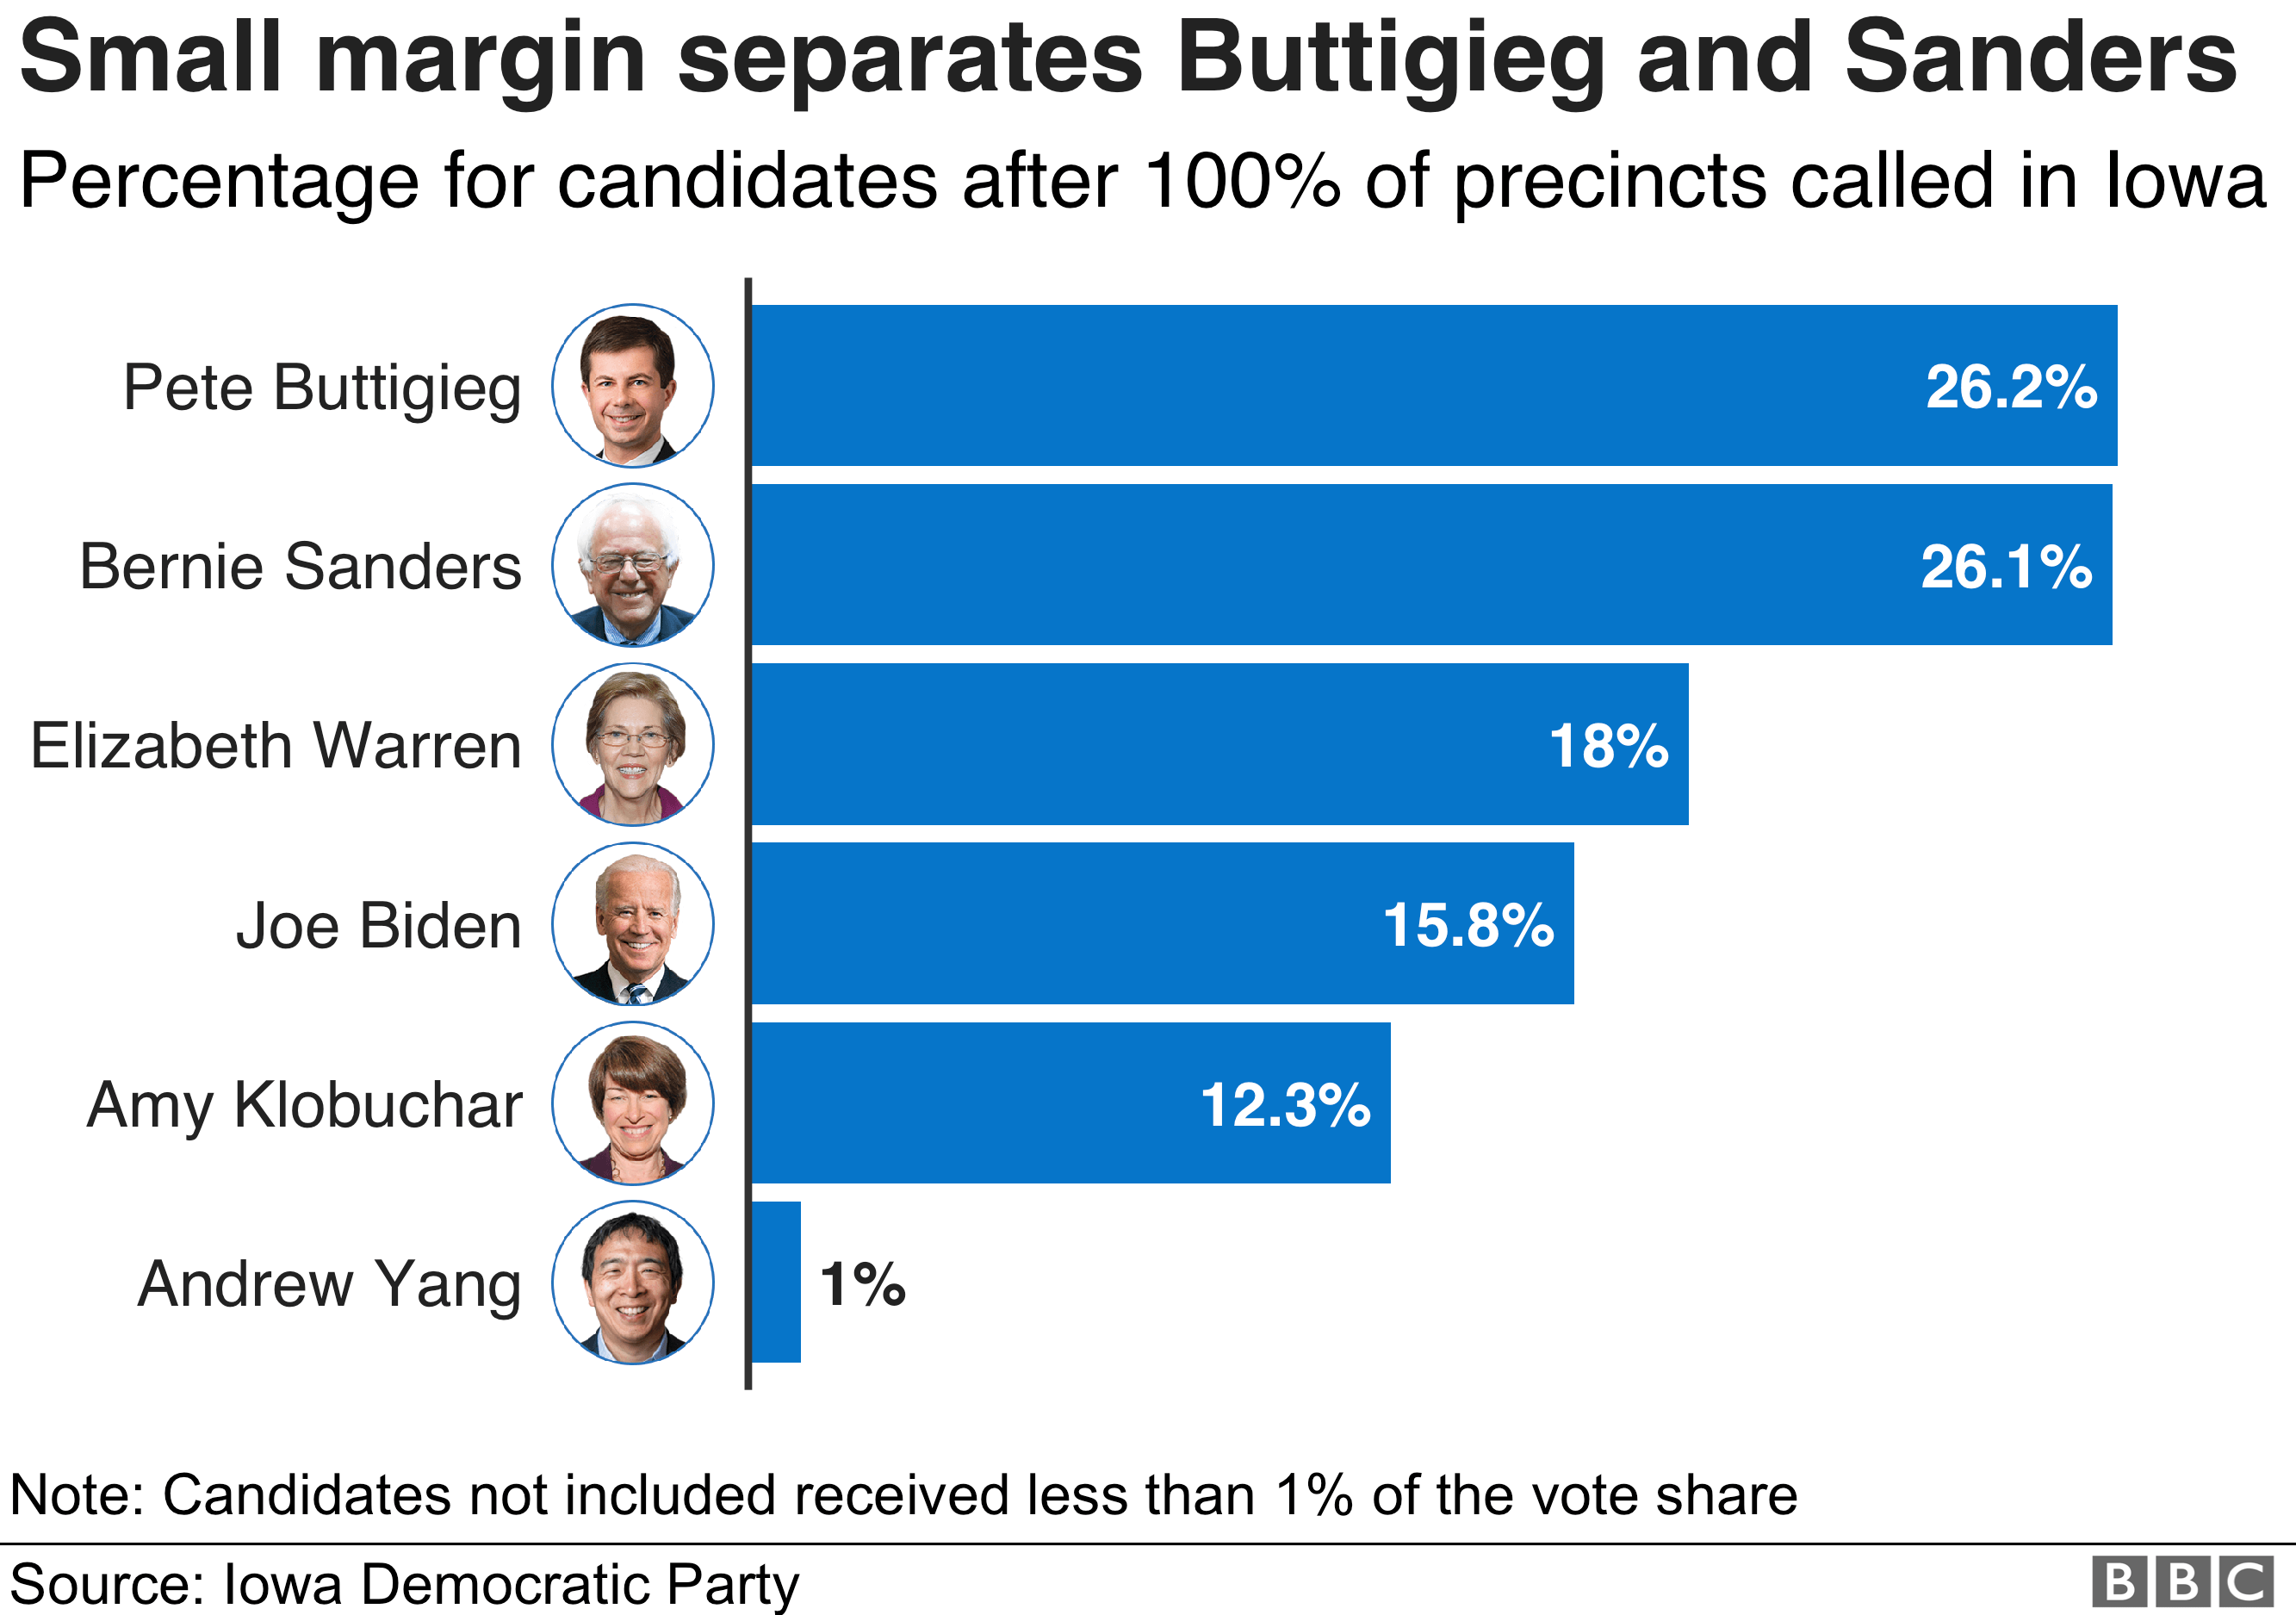 Chart showing a breakdown of the results in Iowa: Pete Buttigieg 26.2%, Bernie Sanders 26.1%, Elizabeth Warren 18%, Joe Biden 15.8%, Amy Klobuchar 12.3%, Andrew Yang 1%